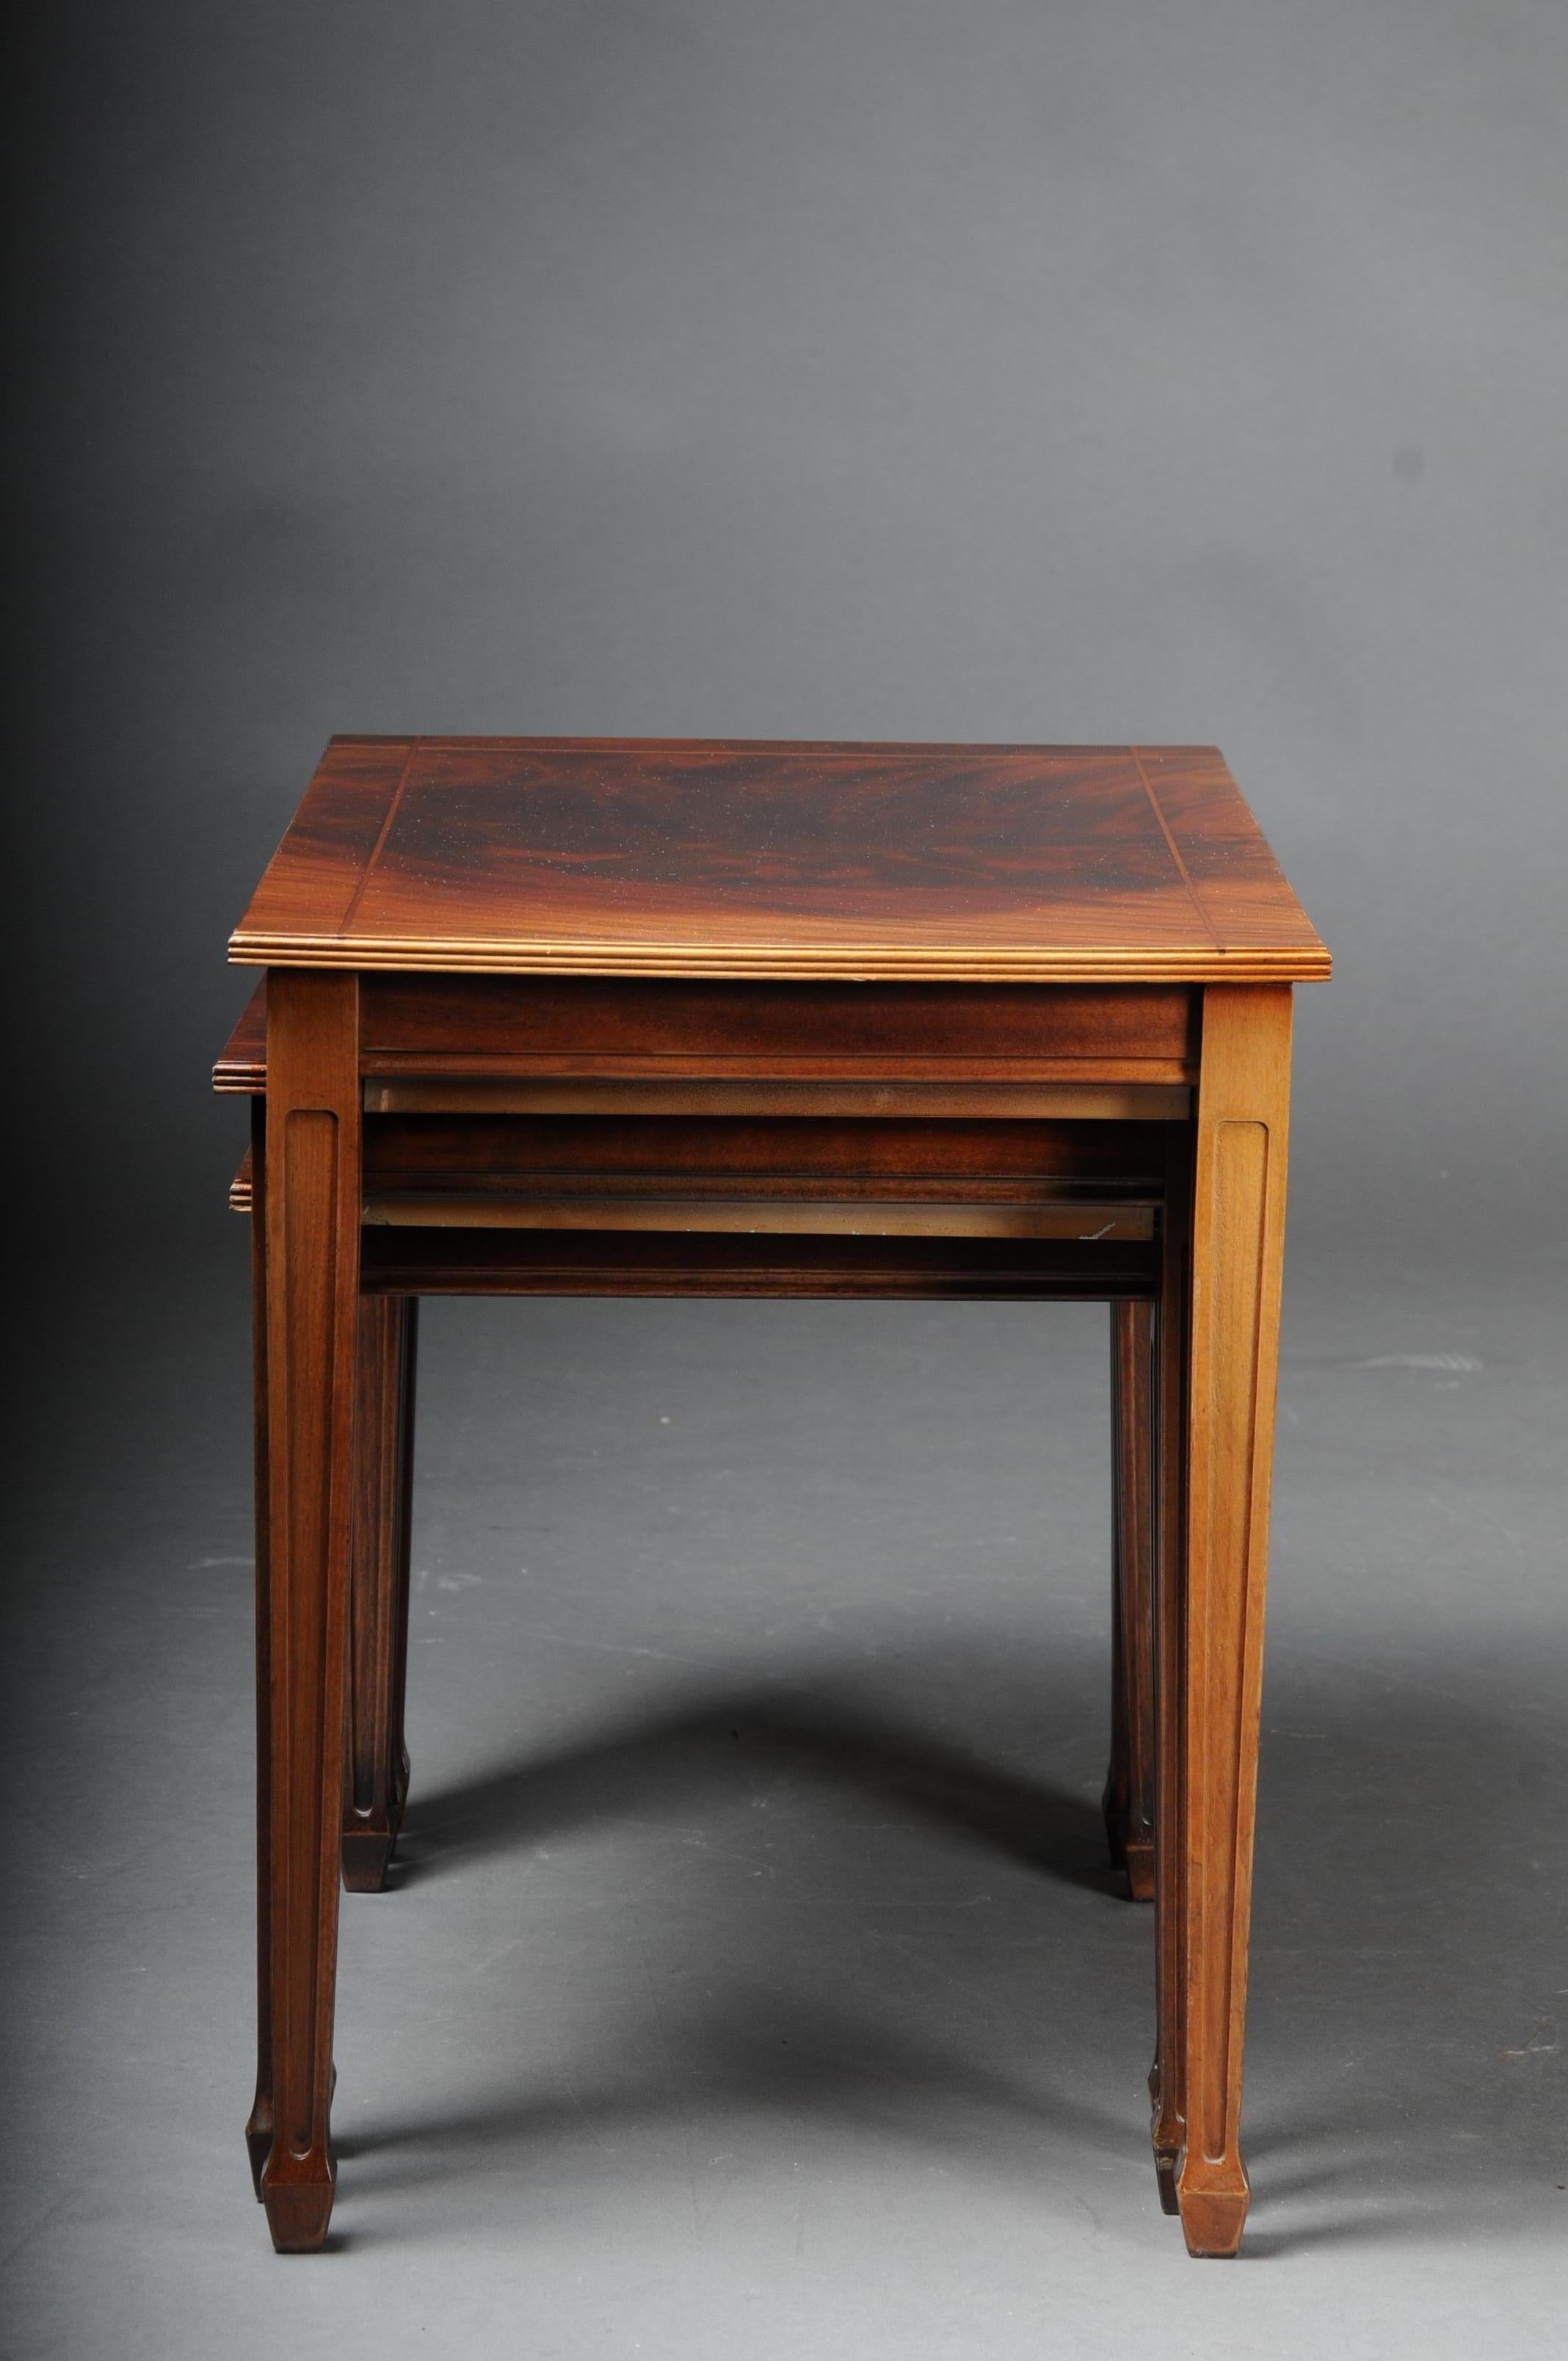 20th Century English Set of 3 Side Tables, Mahogany (Holz)